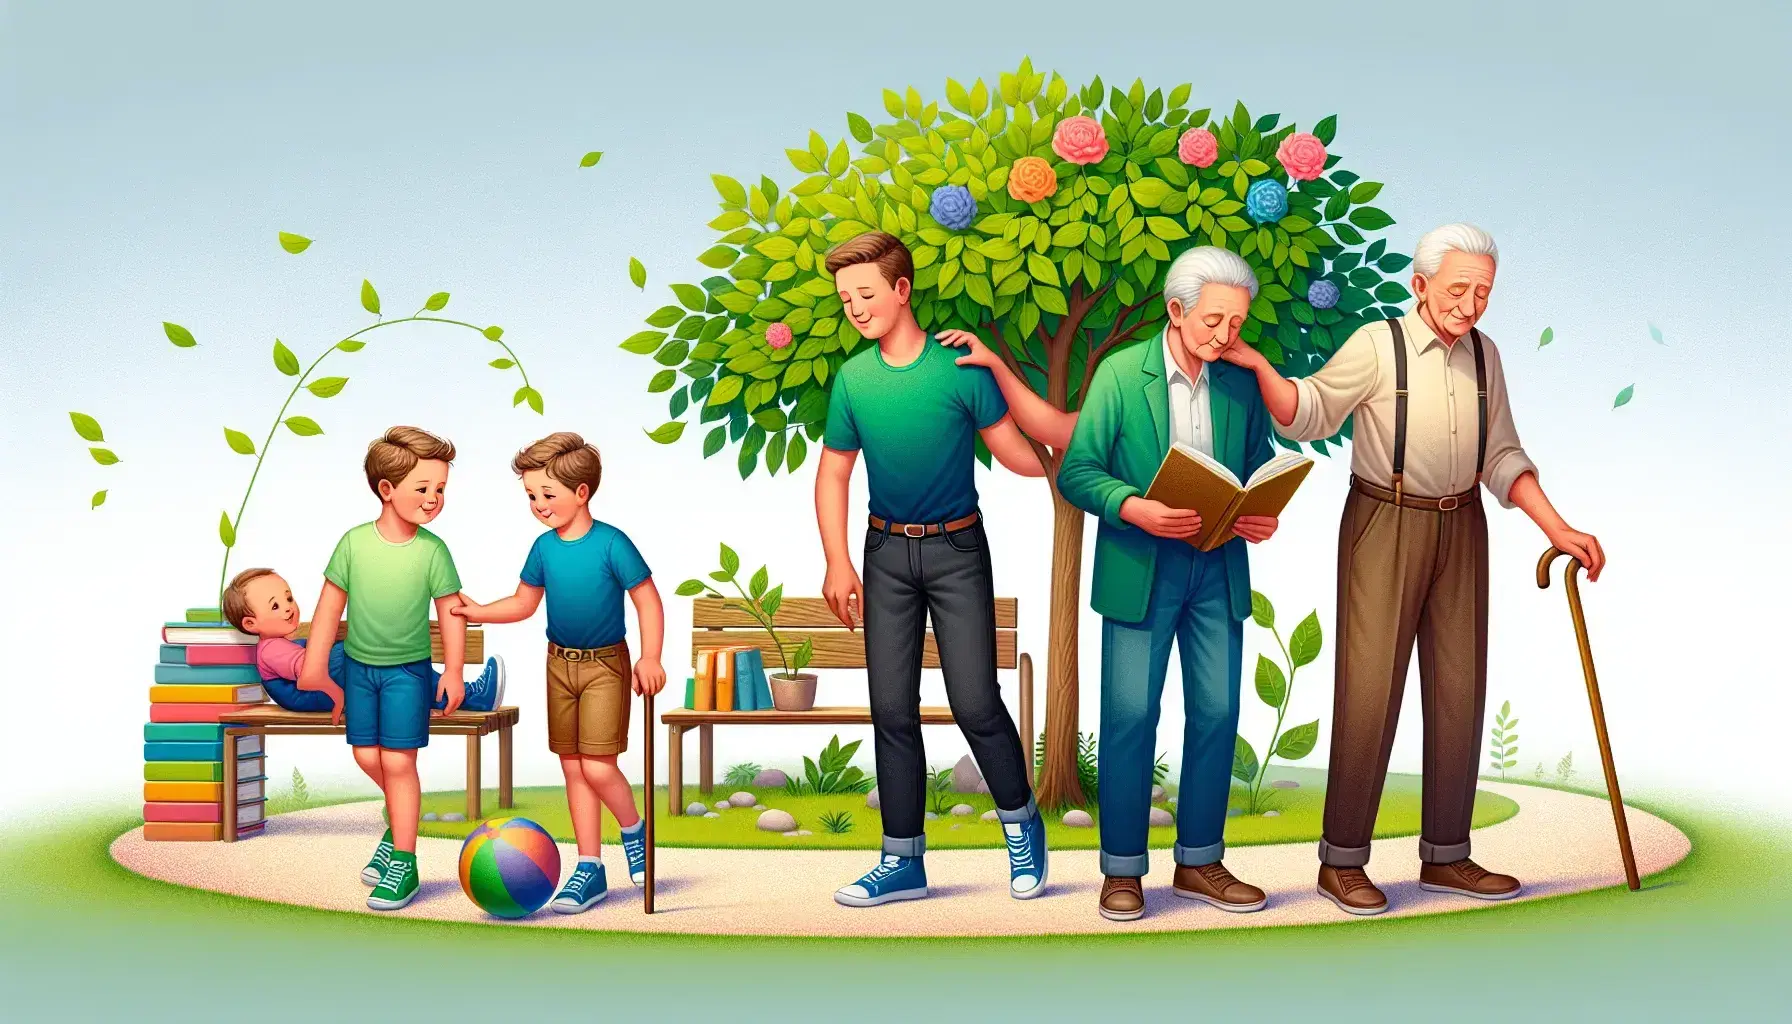 Tres personas en distintas etapas de la vida, niño jugando con pelota, adulto con libro y anciano con bastón, en parque soleado con árbol y banco.